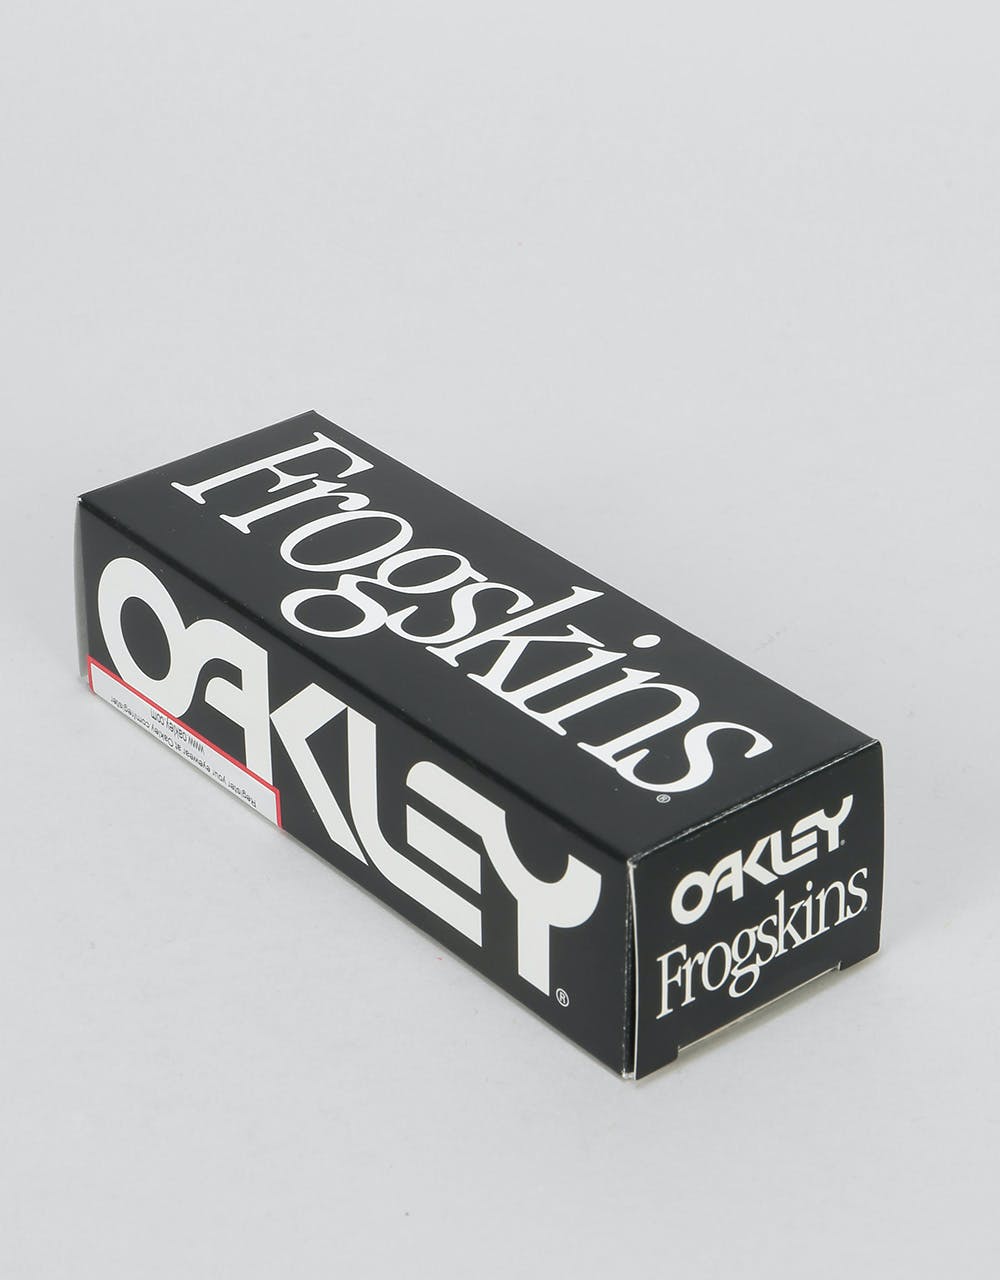 Oakley Frogskins Sunglasses - Polished Black (Grey Lens)